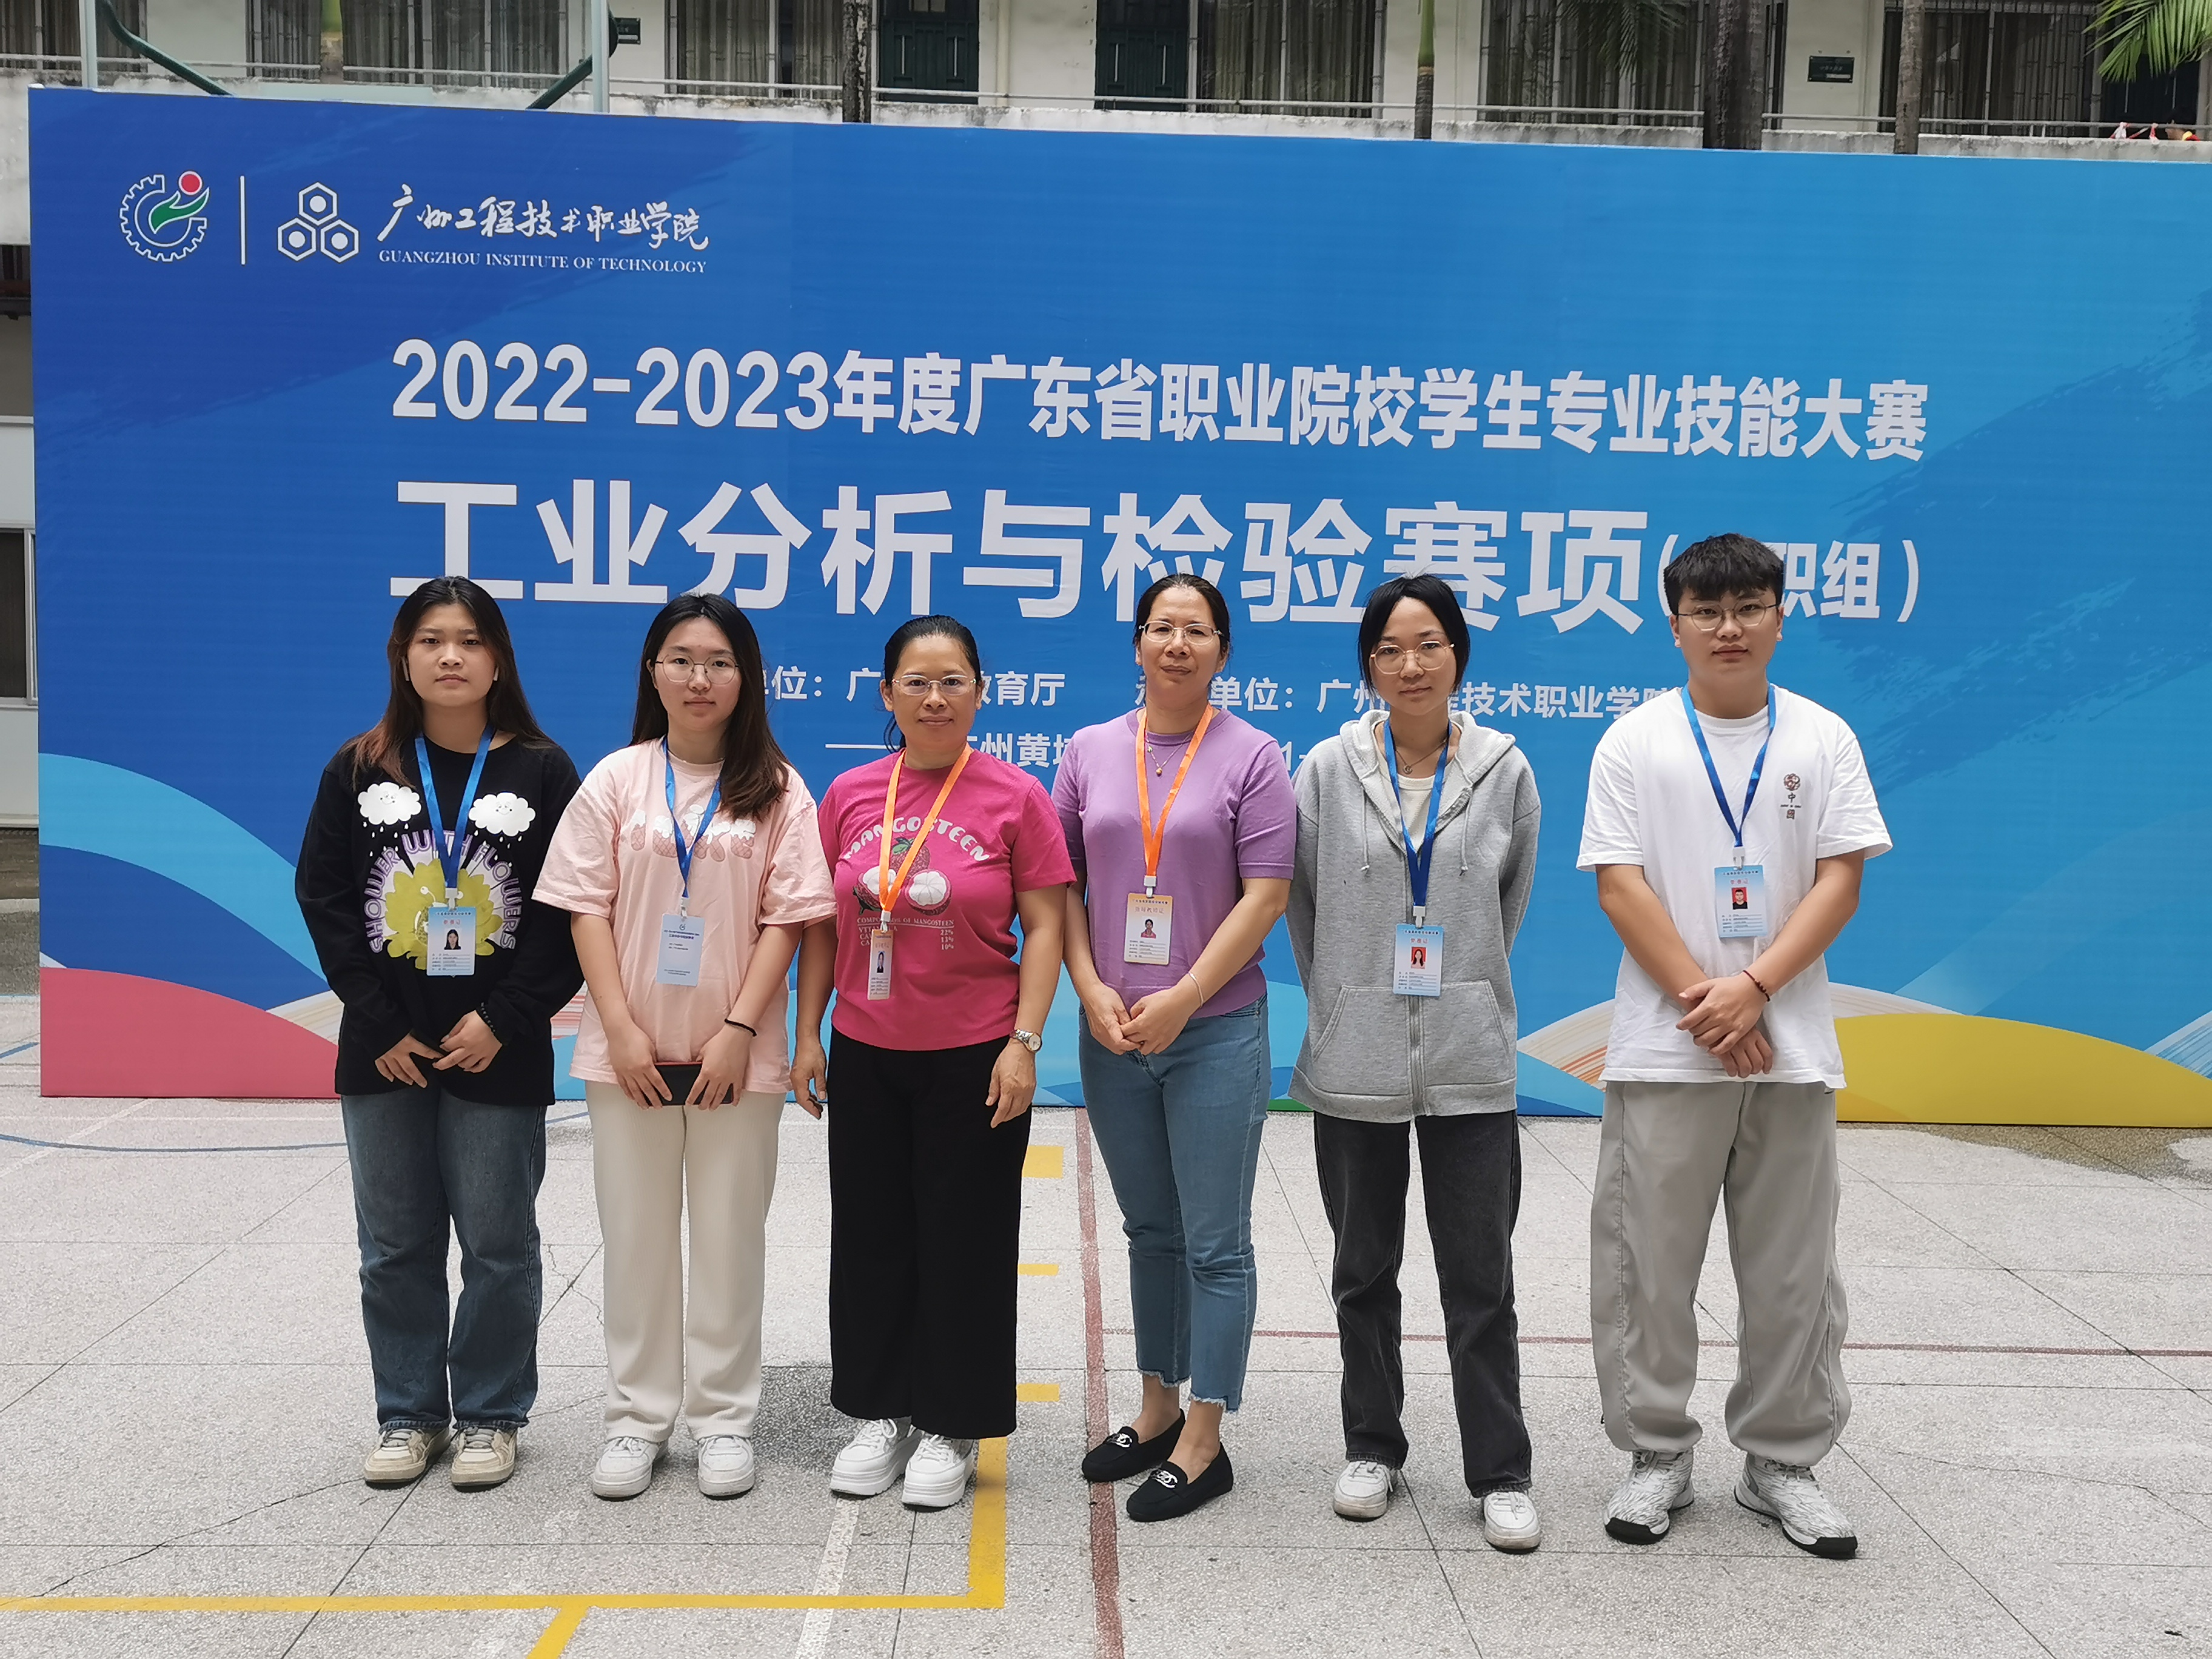 輕工與材料學院榮獲廣東省職業院校學生專業技能大賽“工業分析與檢驗”賽項二、三等獎